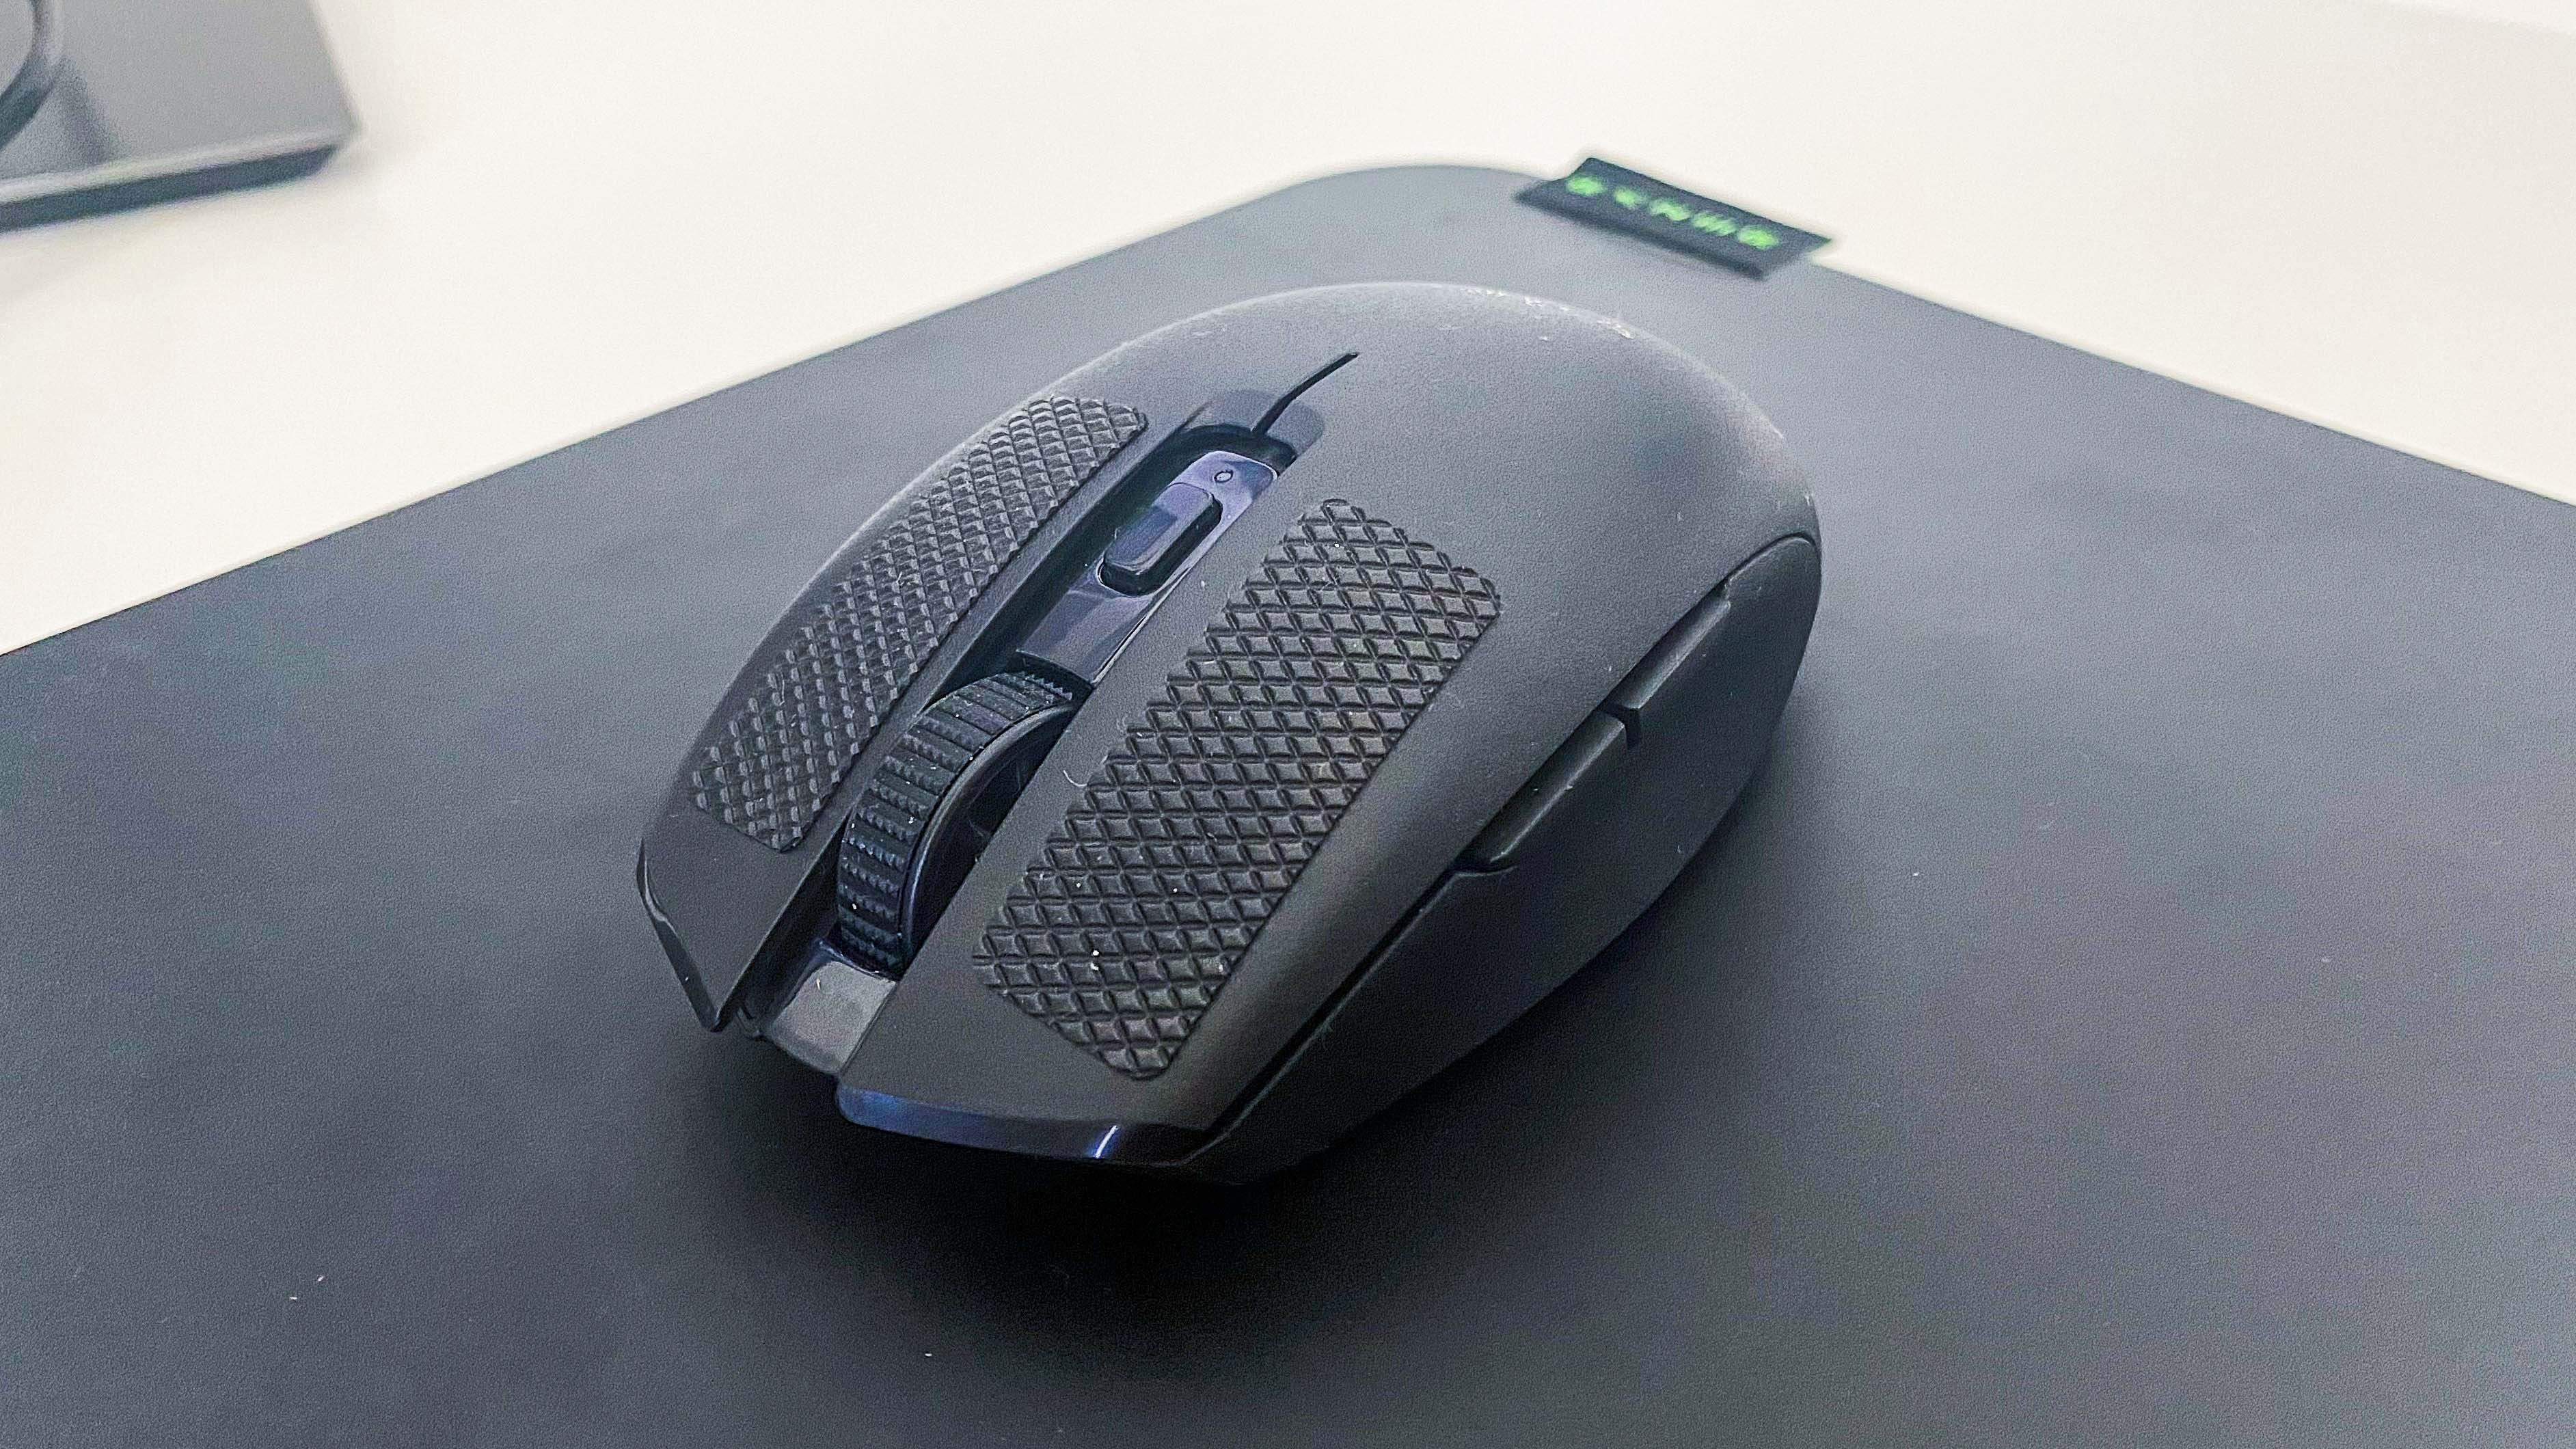 Best wireless gaming mouse: Razer Orochi V2